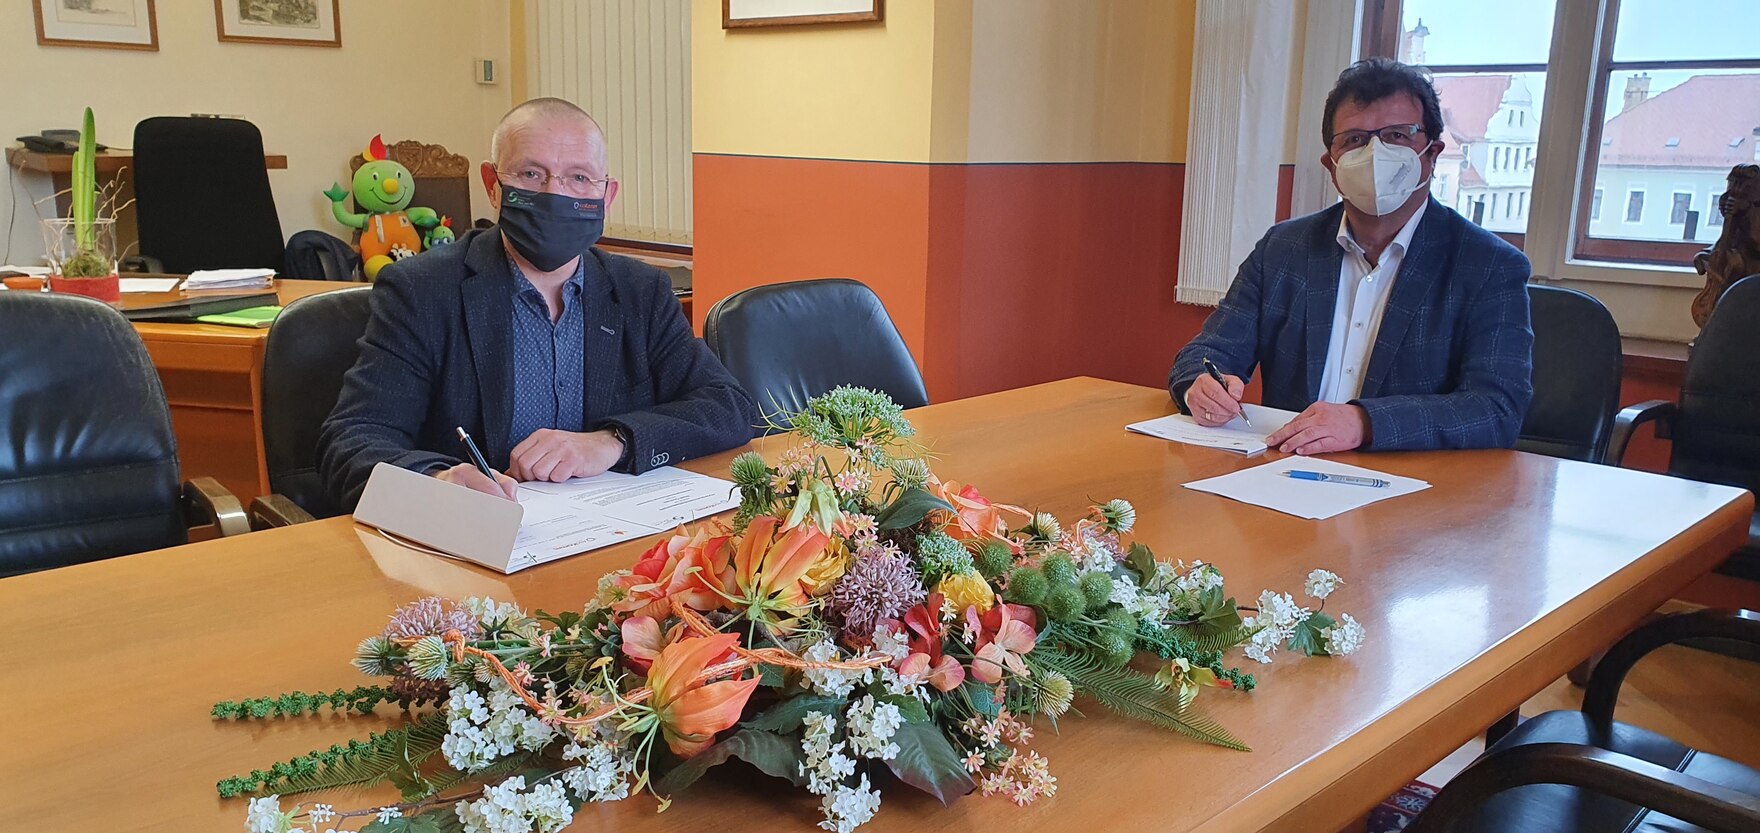 Der Bürgermeister der Stadt Oschatz und der Vertreter des Landespräventionsrates sitzen am Tisch und unterzeichnen jeweils die Kooperationsvereinbarung. Auf dem Tisch liegt ein Blumengesteck.